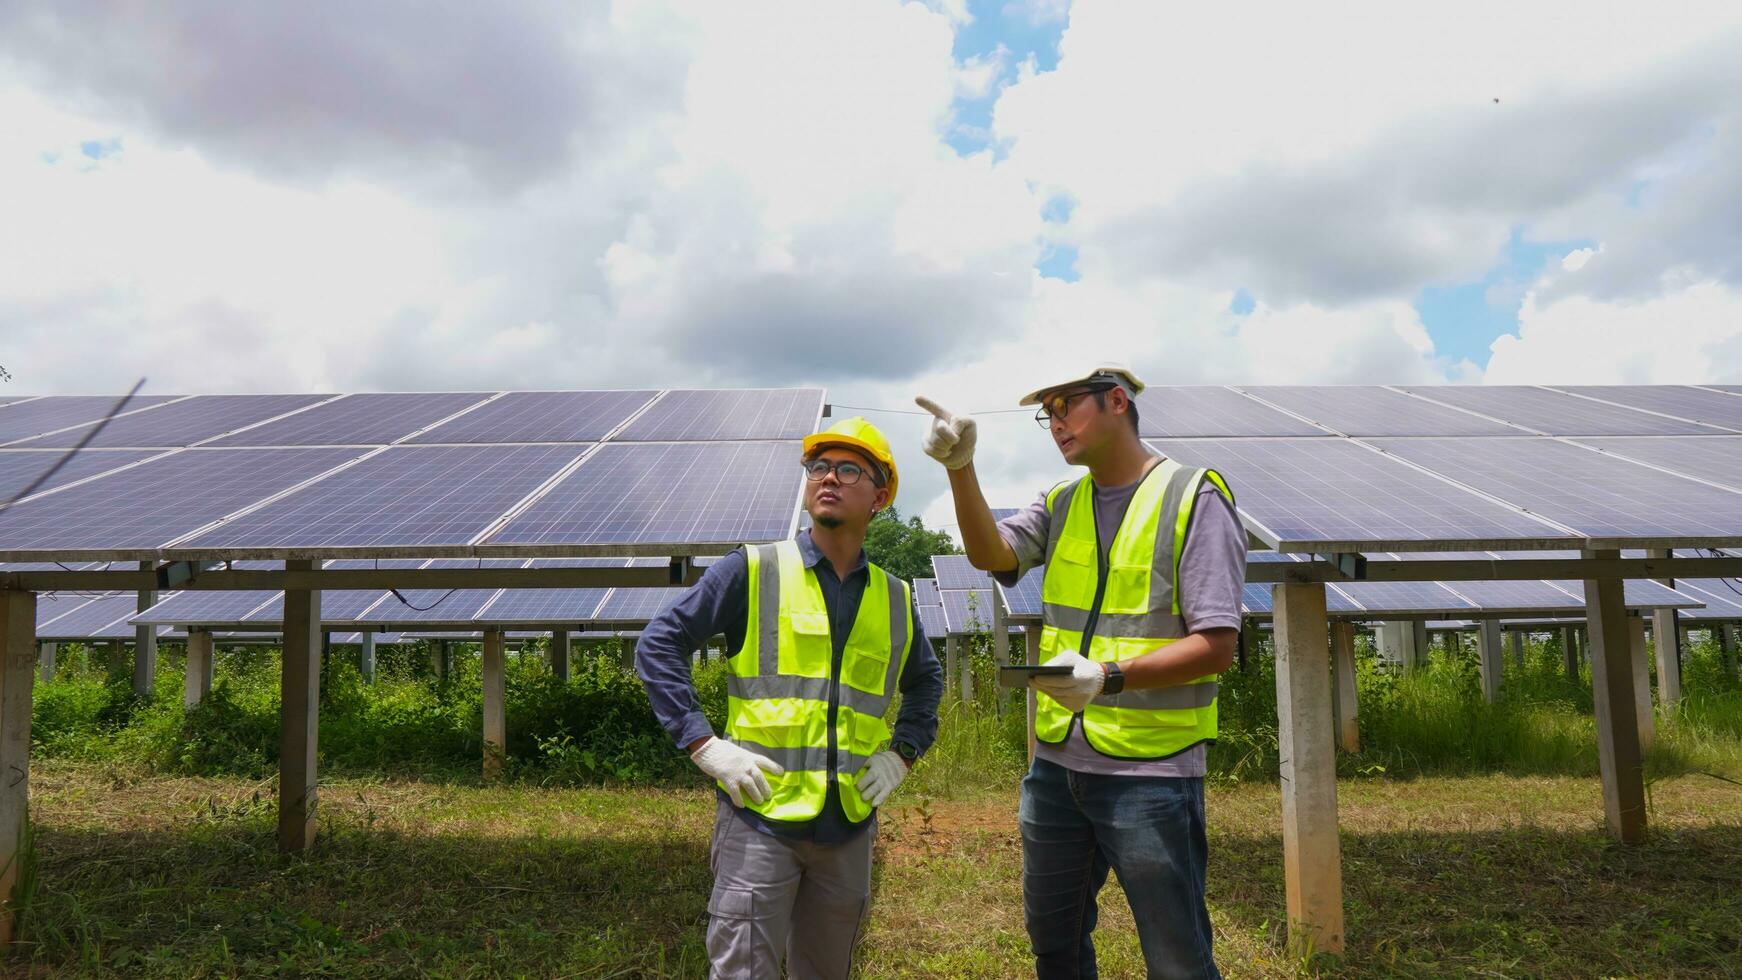 professionnel asiatique homme ingénieur en utilisant numérique tablette maintenir solaire cellule panneaux ensemble .technicien équipe travail sur écologique solaire cultiver. photo